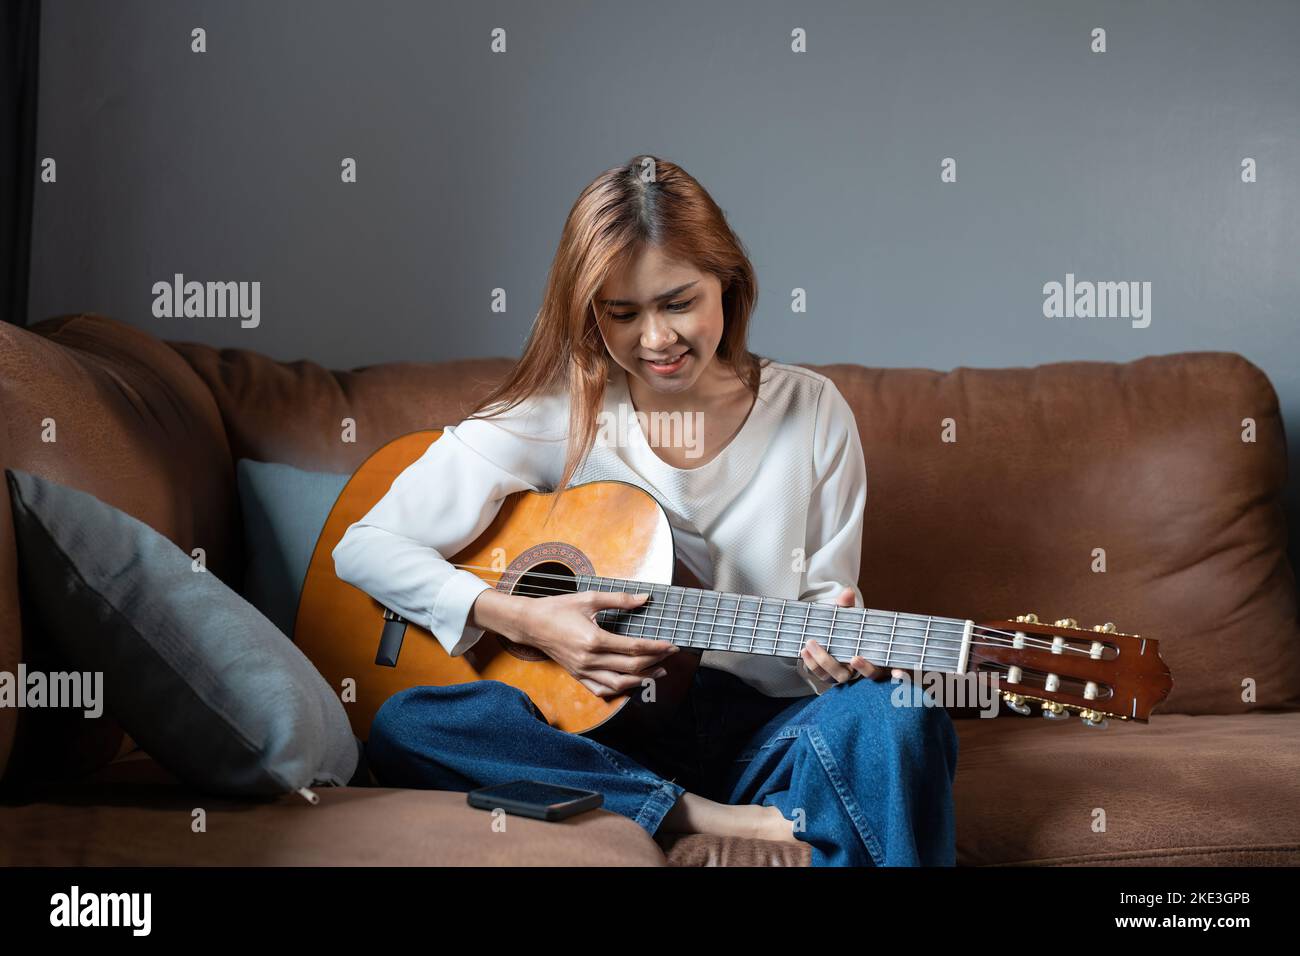 Immagine di una bella donna felice che suona la chitarra e compone la canzone. Foto Stock